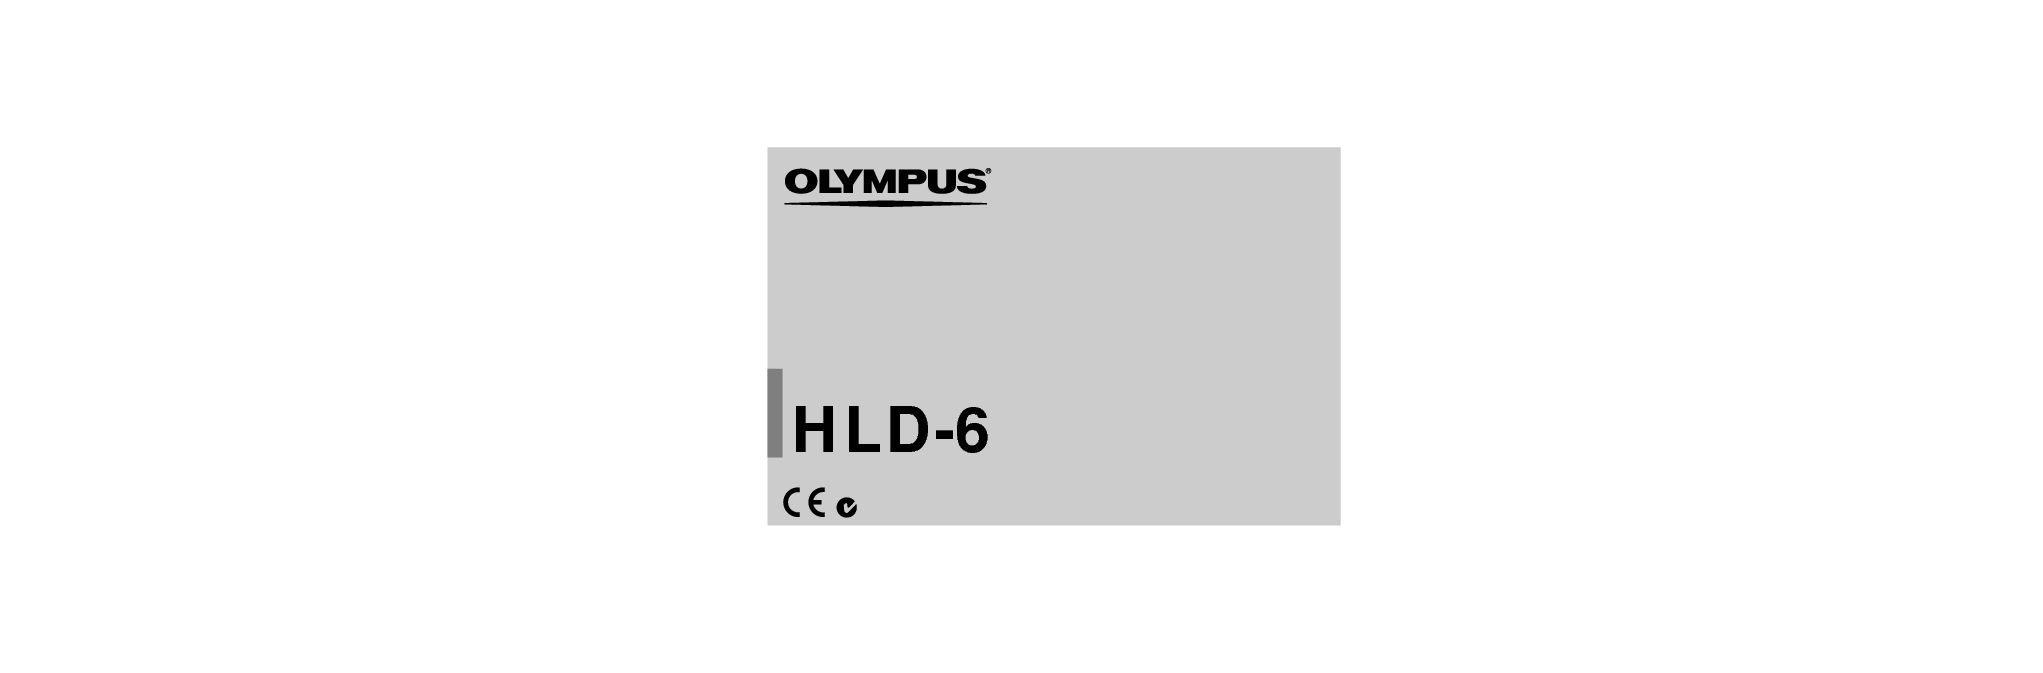 奥林巴斯 Olympus HLD-6 使用说明书 封面